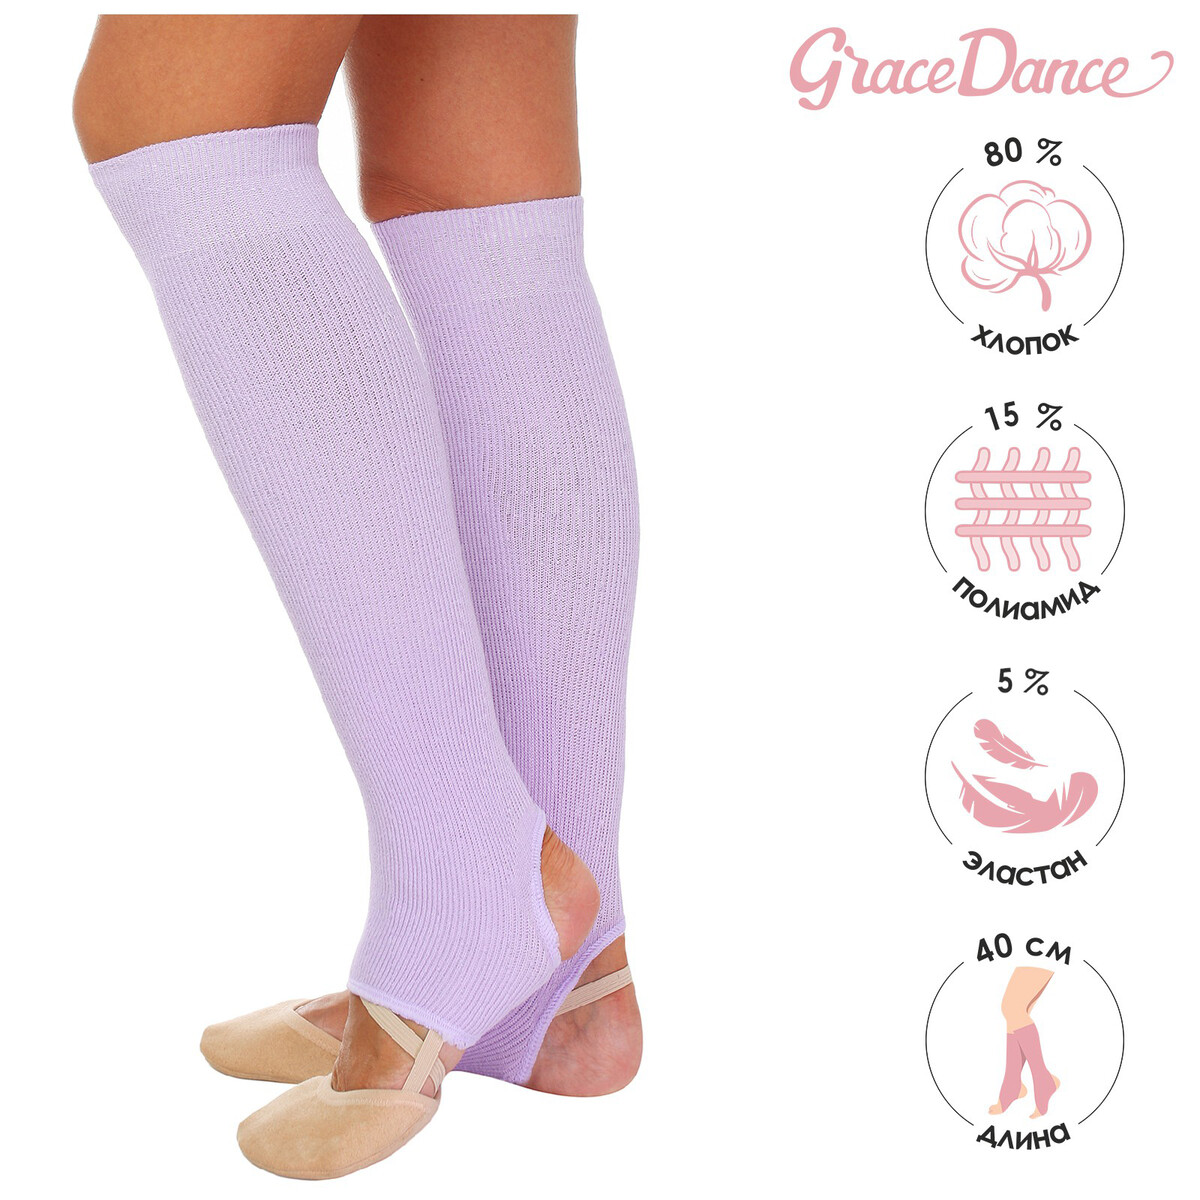 Гетры для танцев grace dance №5, длина 40 см, цвет сиреневый гетры для танцев grace dance 5 длина 50 см бирюзовый